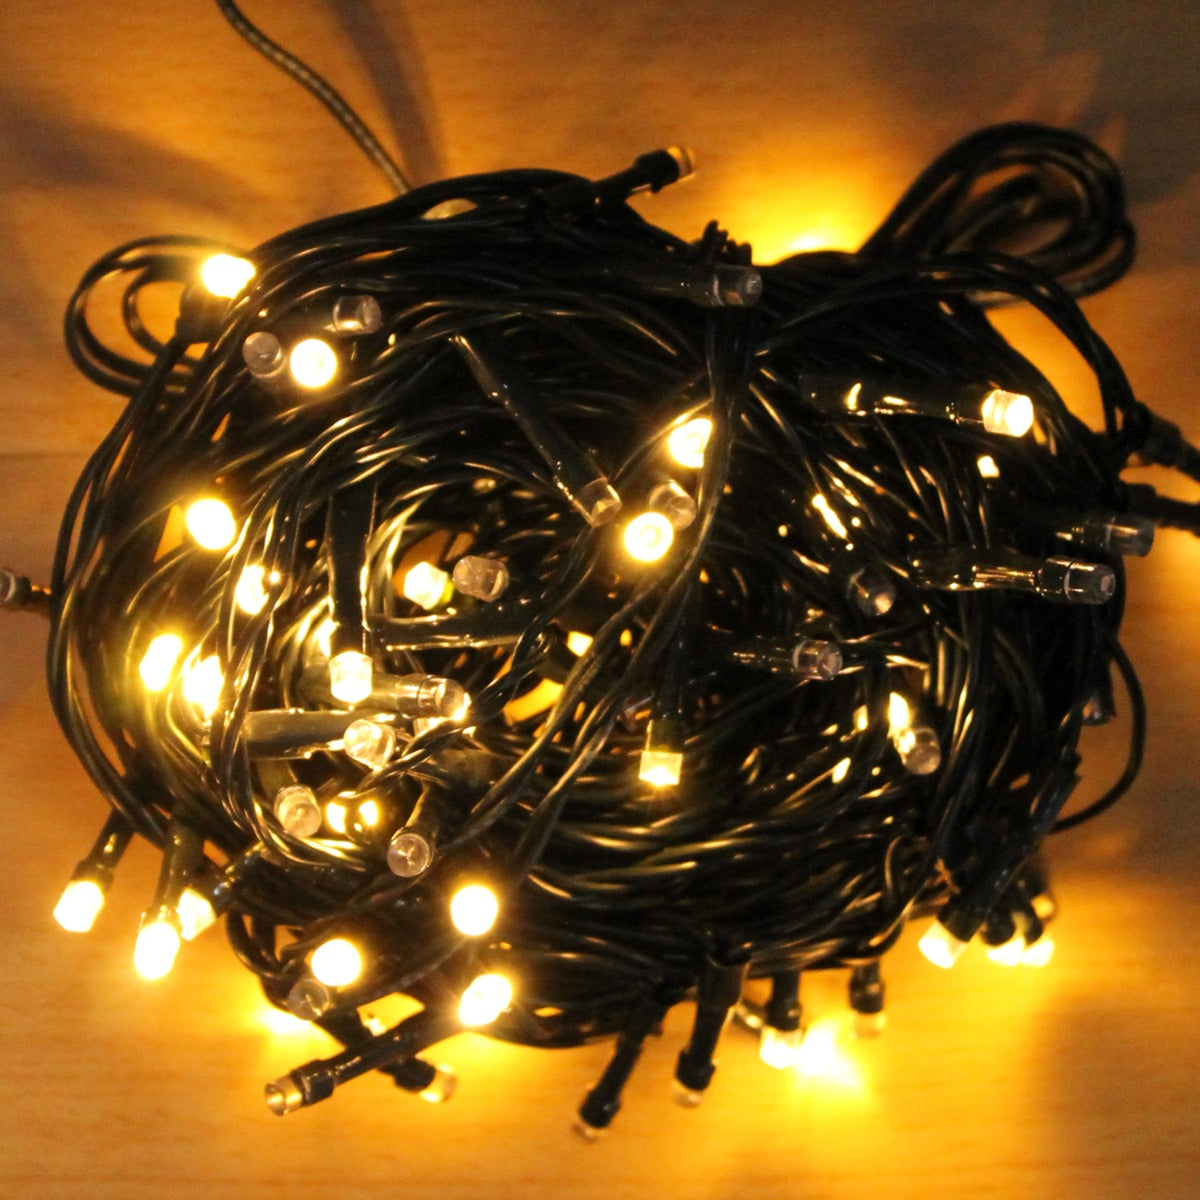 LED Lichterkette 200 LED warmweiss mit Fernbedienung für innen und außen Weihnachtsbeleuchtung